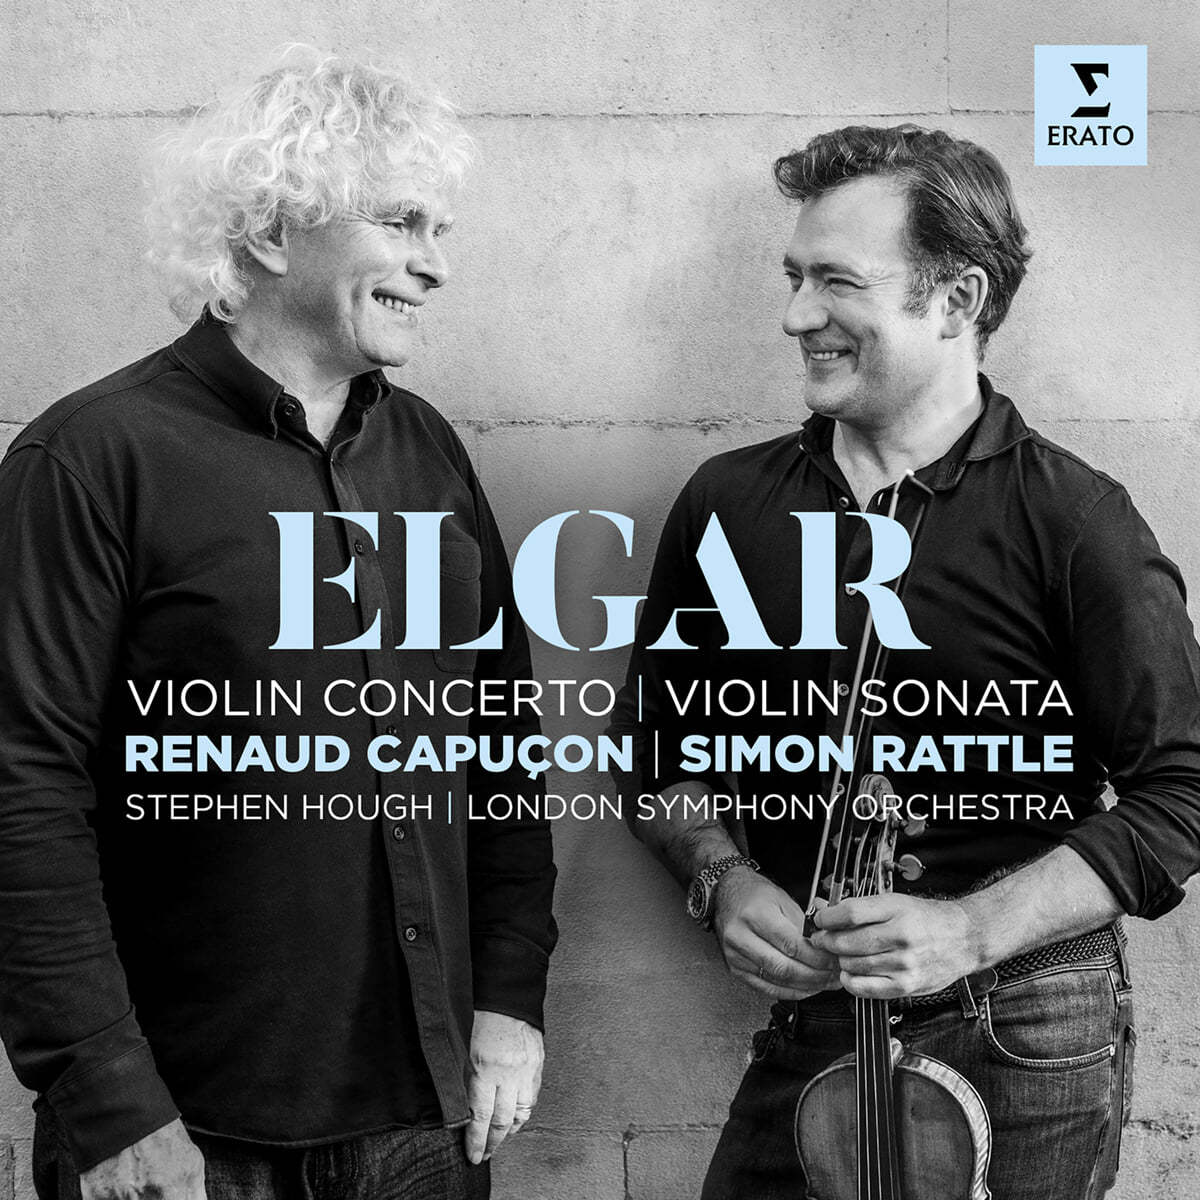 Renaud Capucon 엘가: 바이올린 협주곡, 소나타 (Elgar: Violin Concerto Op.61, Violin Sonata Op.82)